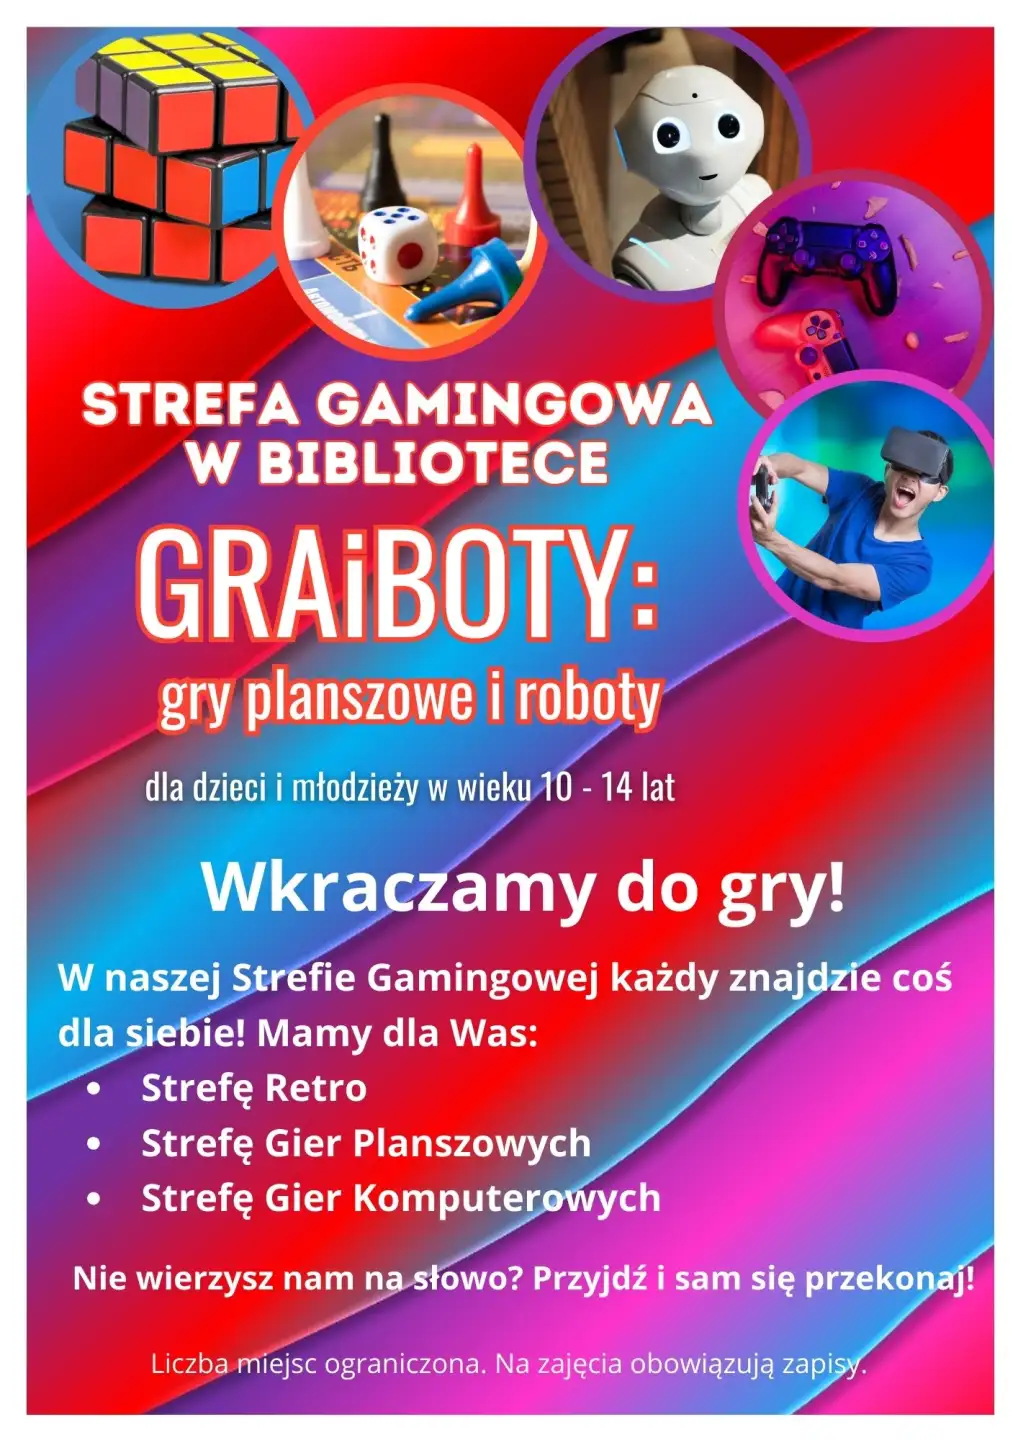 Plakat informujący o zajęciach Strefa Gamingowa w Bibliotece: GraiBoty gry planszowe i roboty. Wkraczamy do gry!